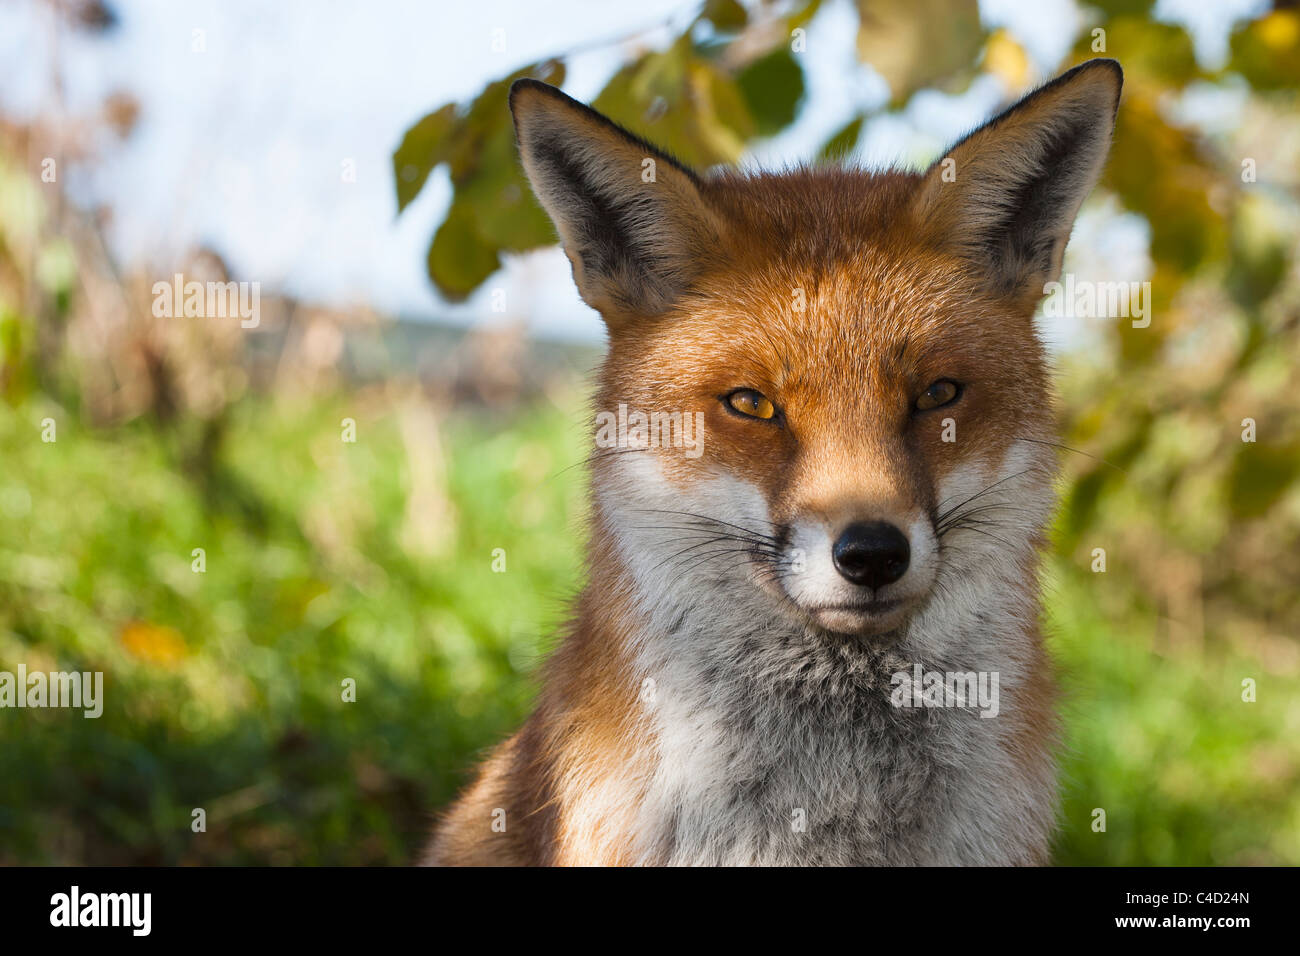 Captive britannico o unione red fox [vulpes vulpes crucigera], testa e spalle ritratto all'aperto Foto Stock